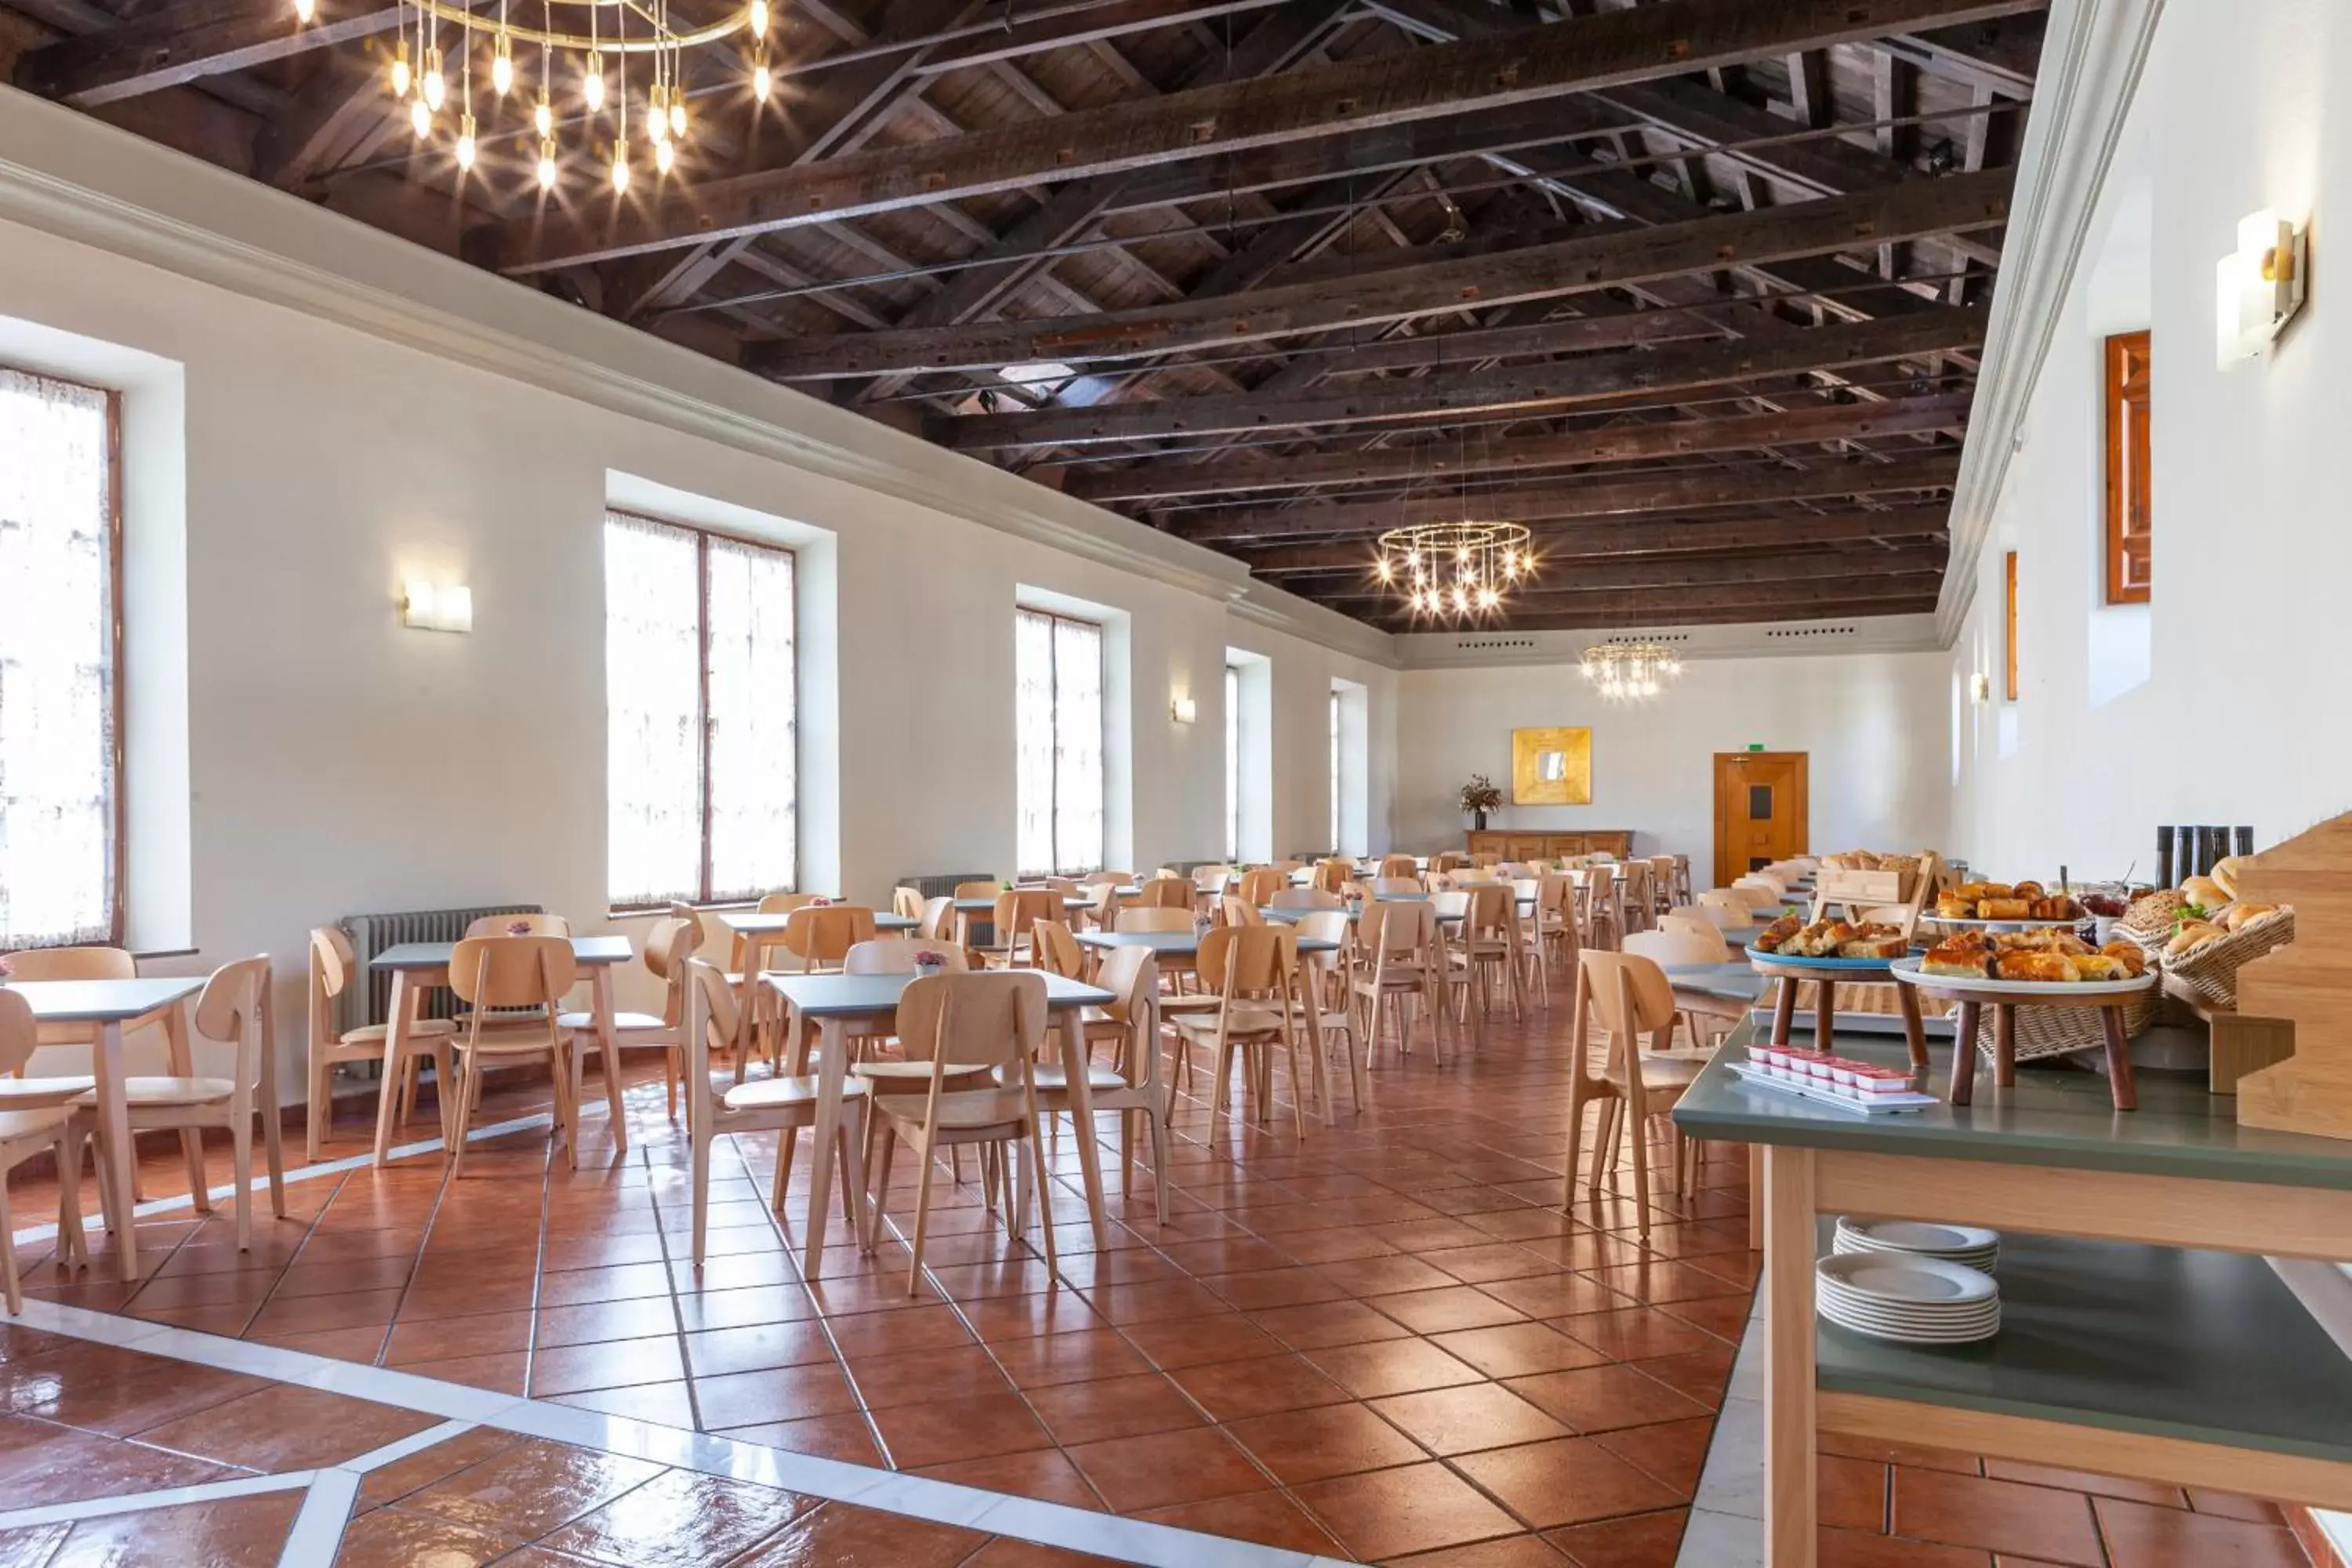 Buffet breakfast, Restaurant/Places to Eat in Hotel Macià Monasterio de los Basilios